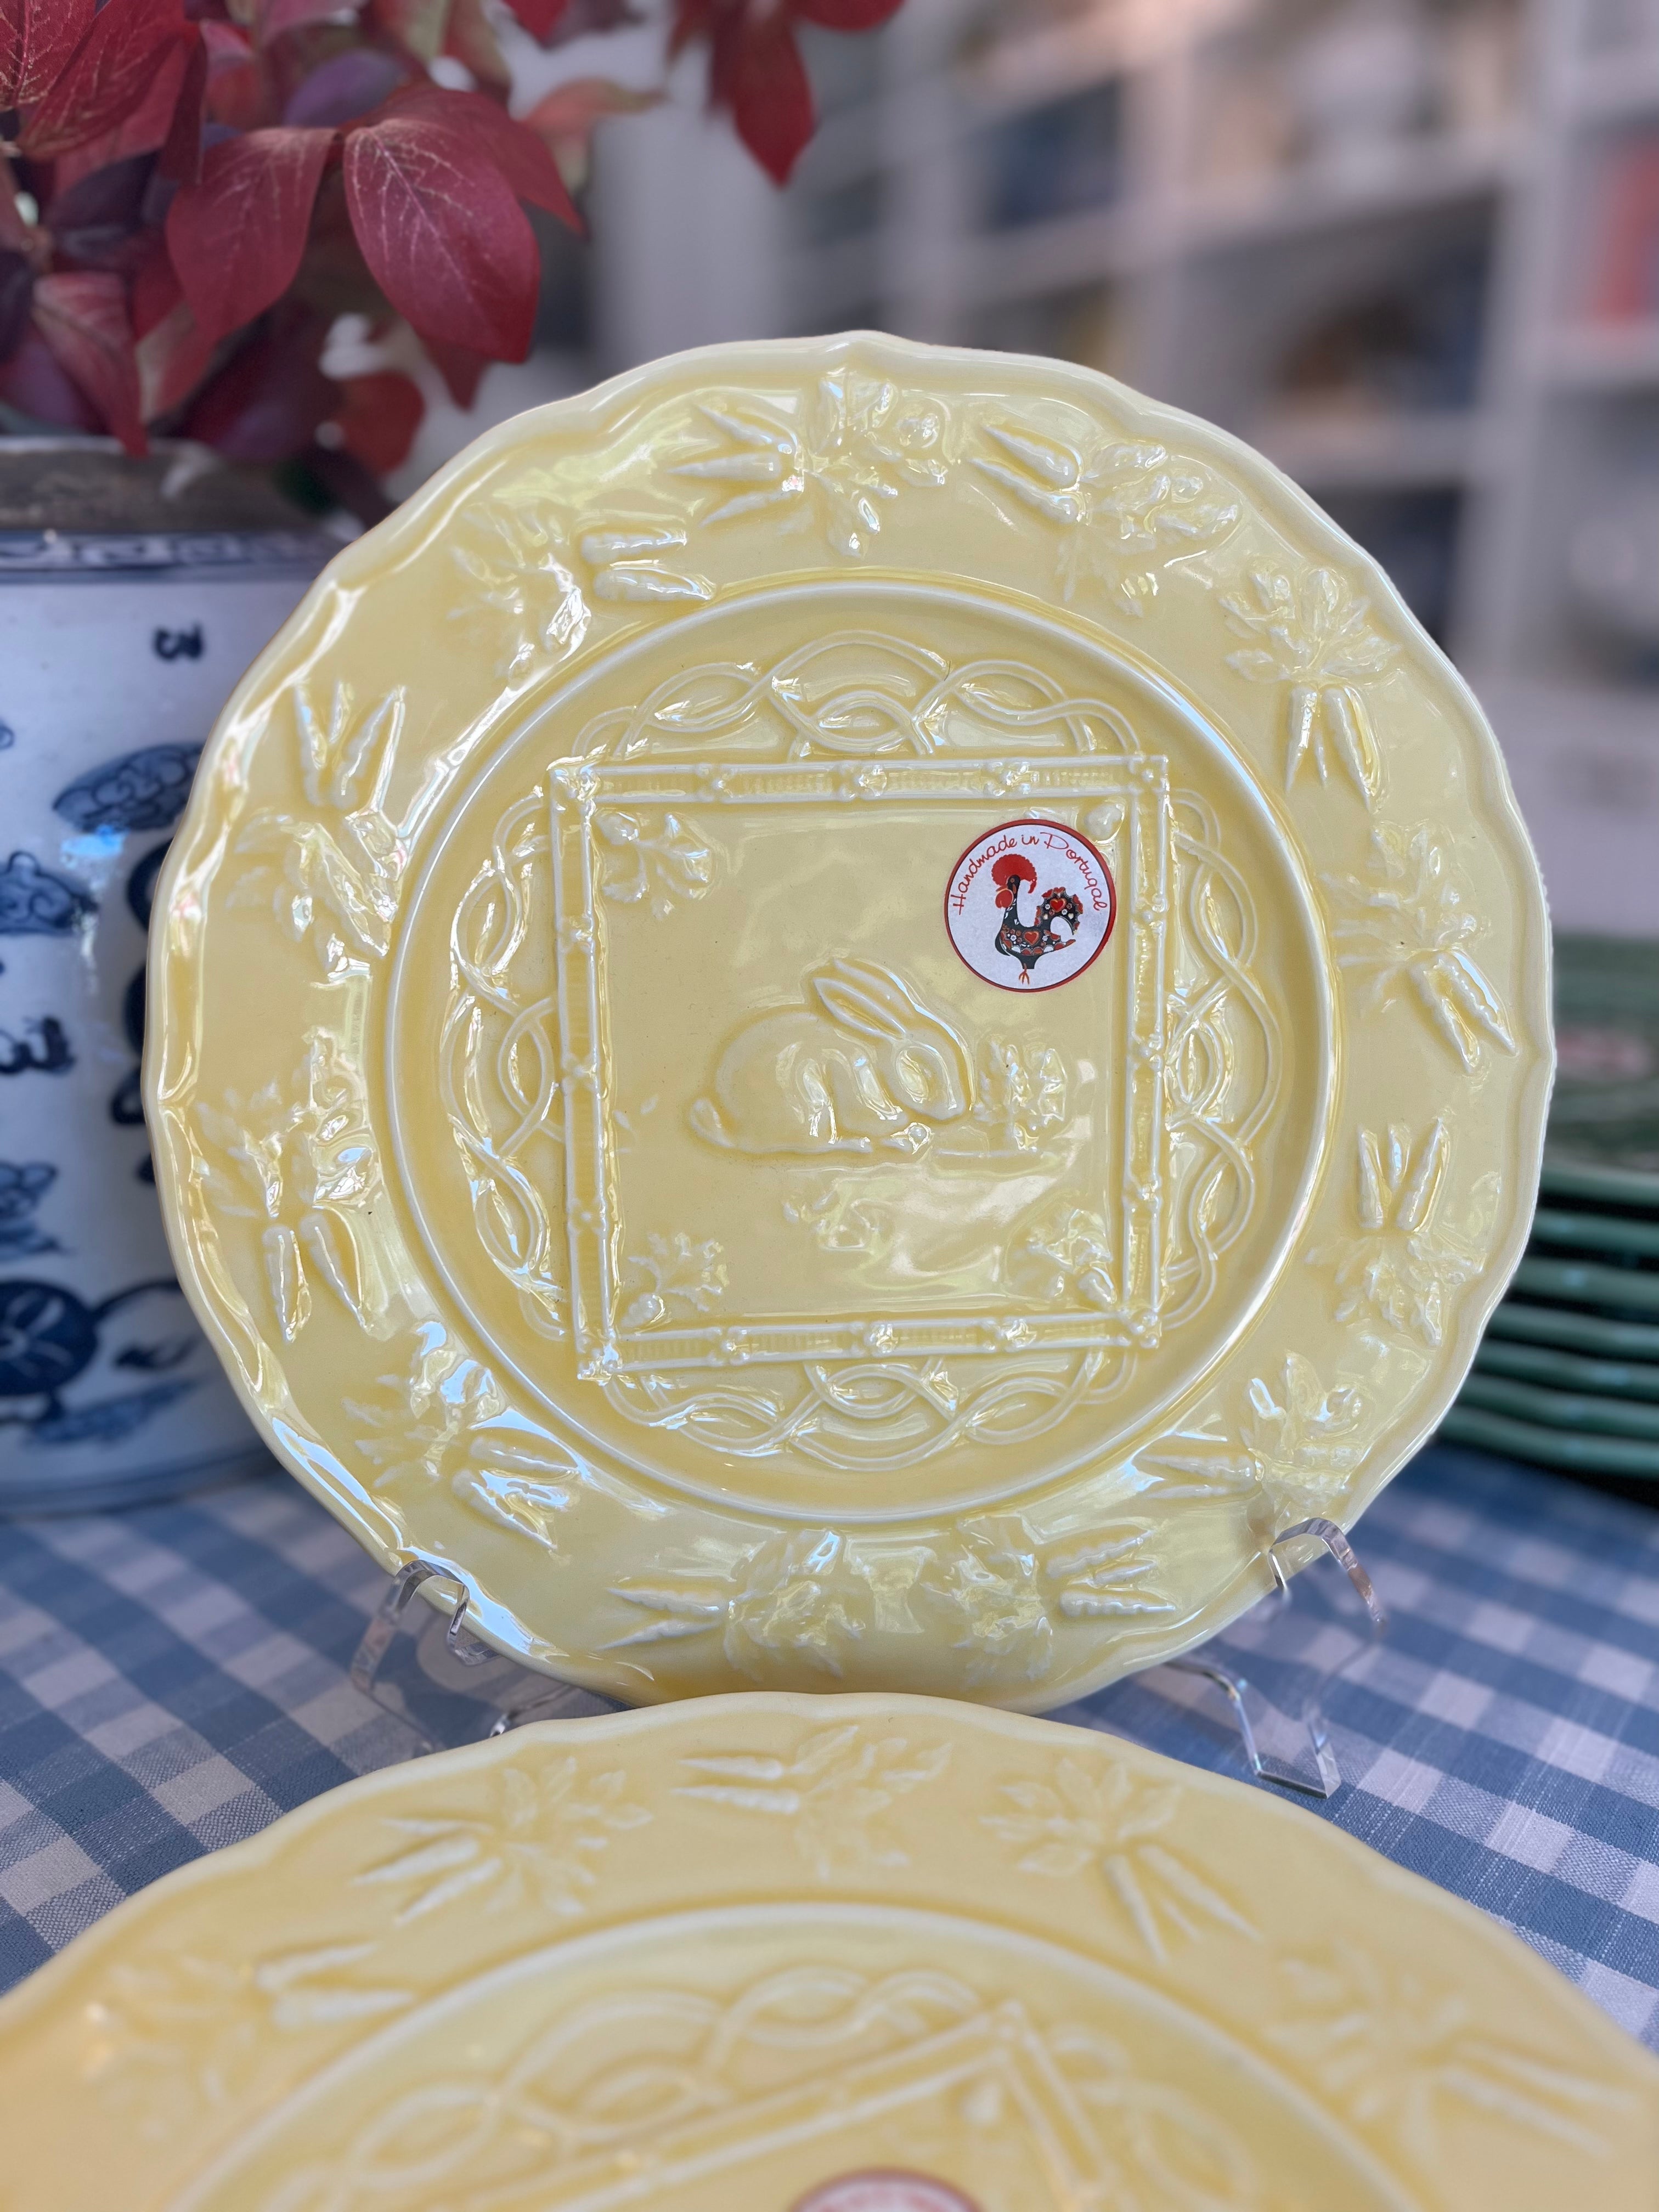 Bordallo Pinhiero Yellow Bunny Plates, 9" (Three Available)